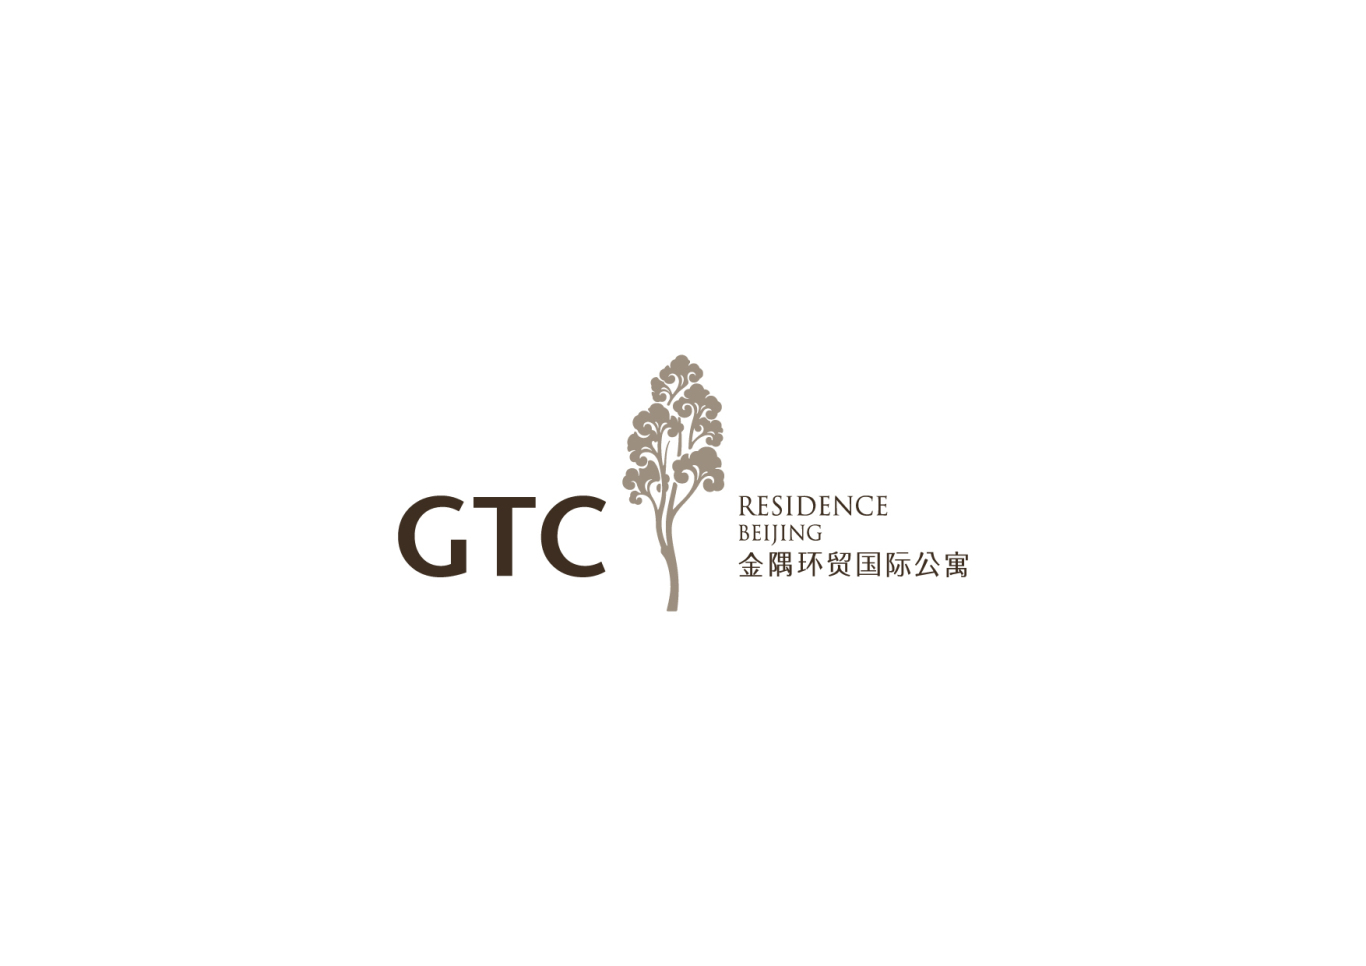 北京金隅GTC国际公寓VI设计图0